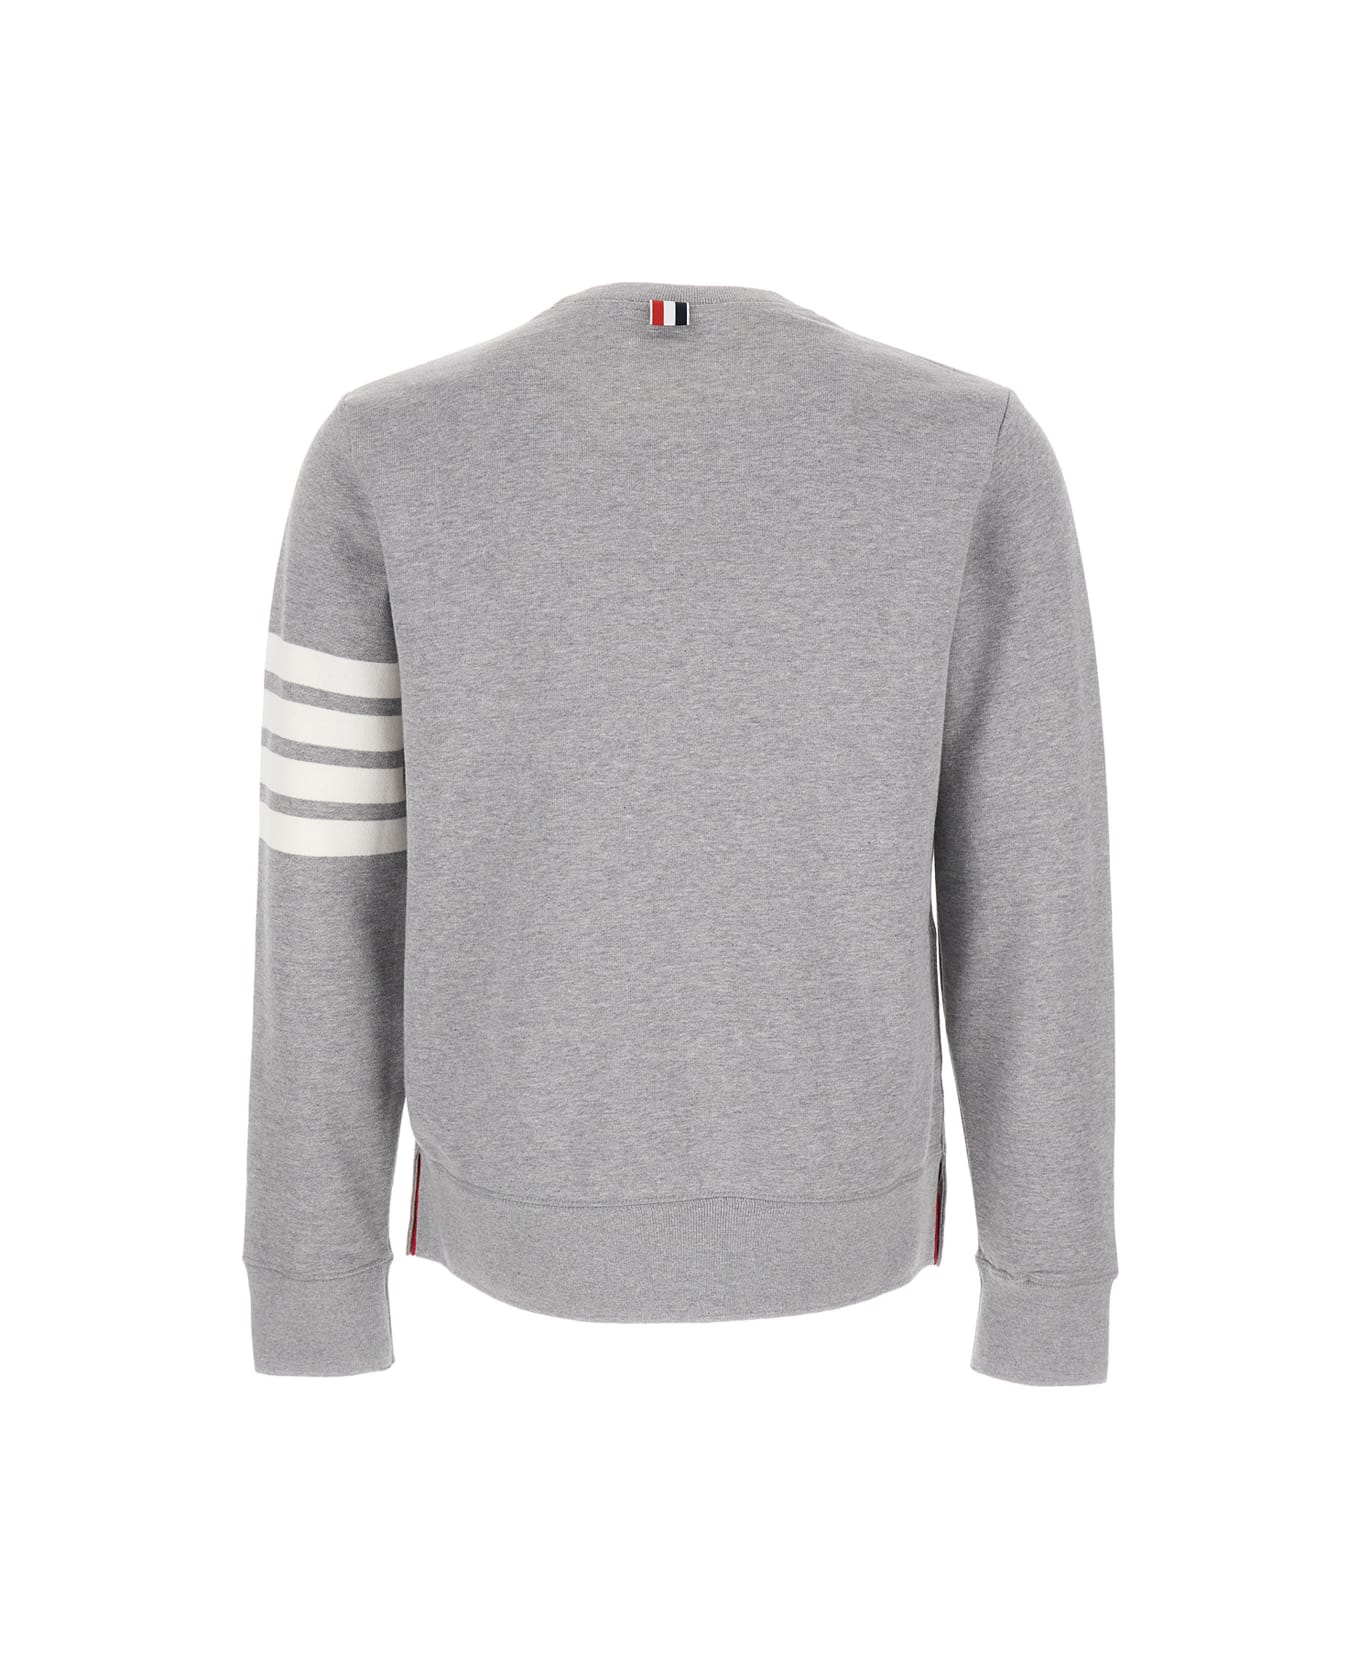 Thom Browne Grey Melange Sweatshirt With 4 Bar Tab In Cotton Man Thom Browne - Grey フリース